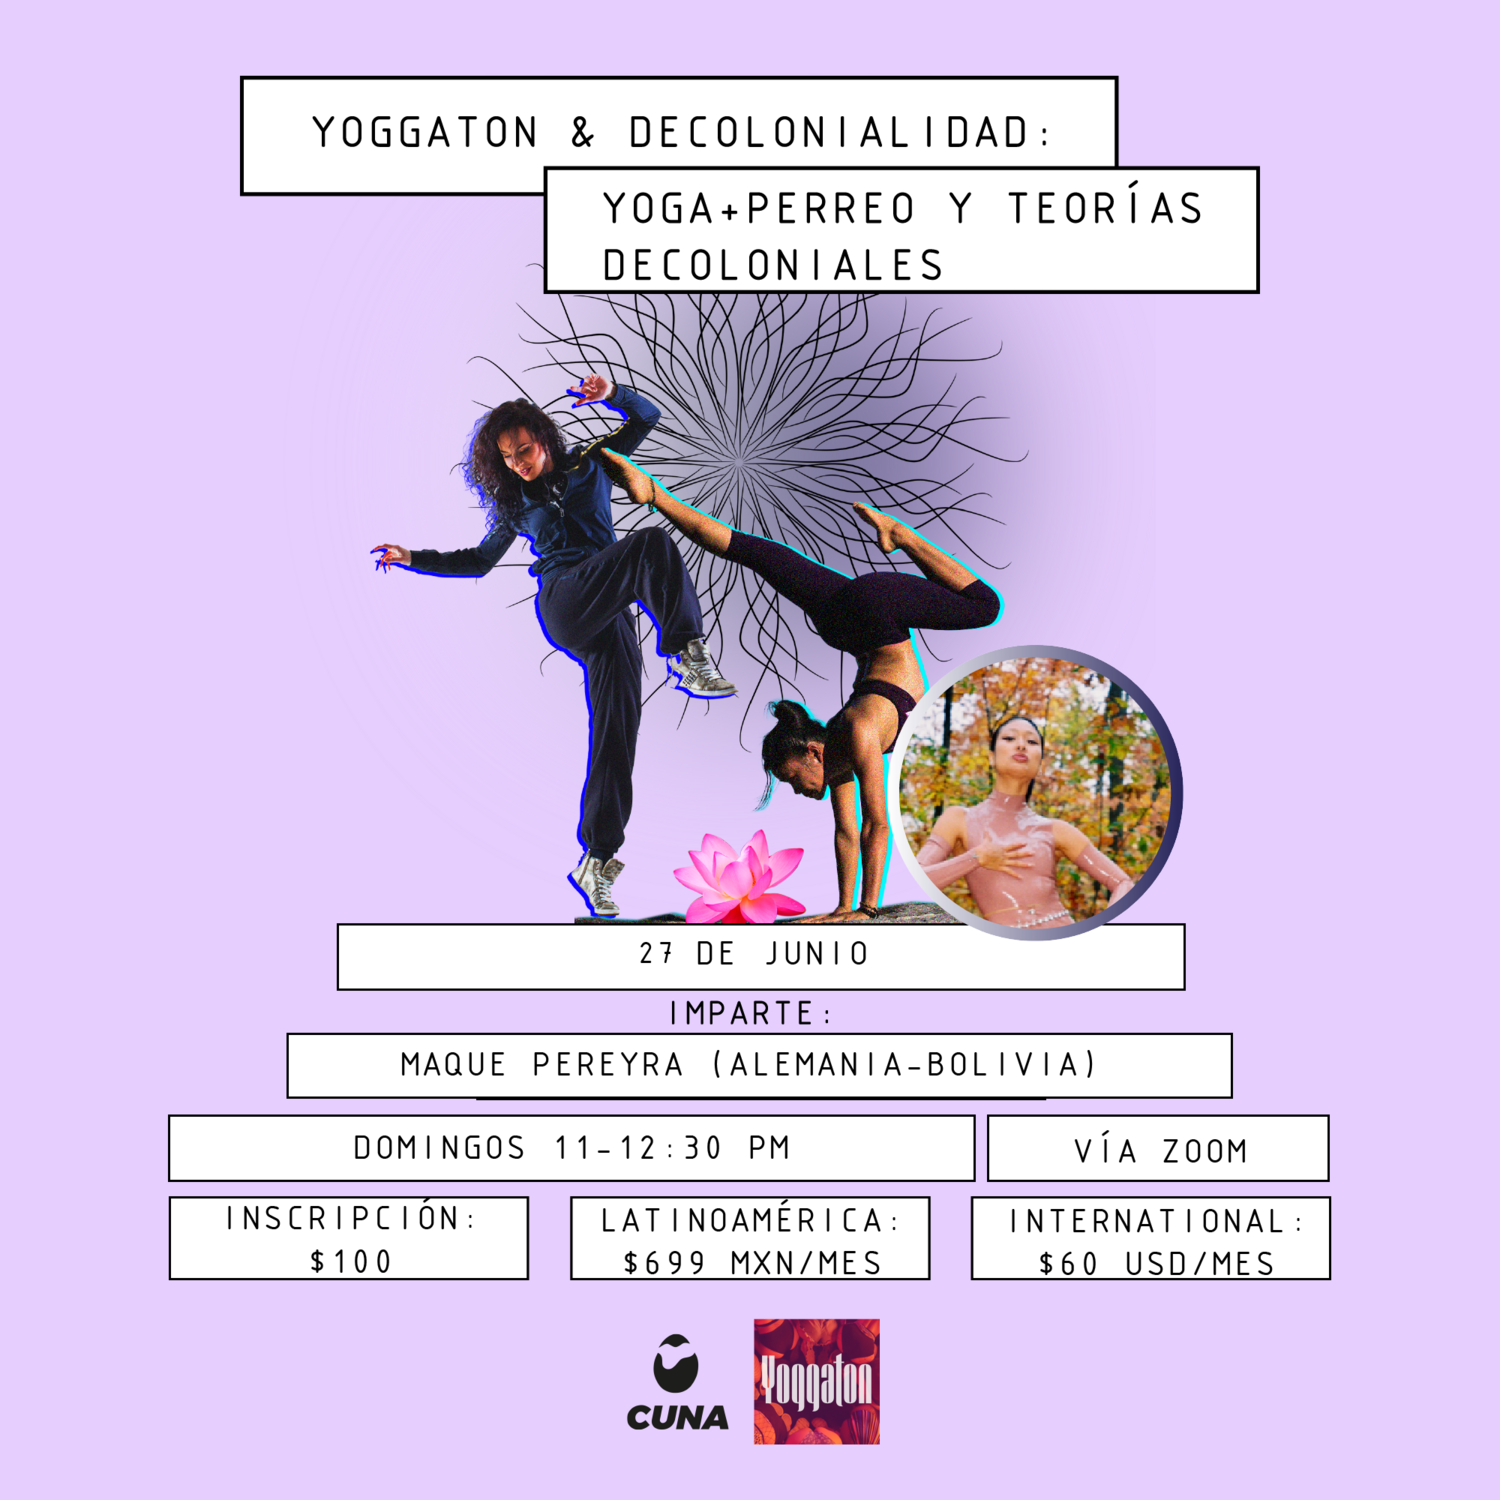 Yoggaton & Decolonialidad: Yoga+Perreo y Teorías Decoloniales